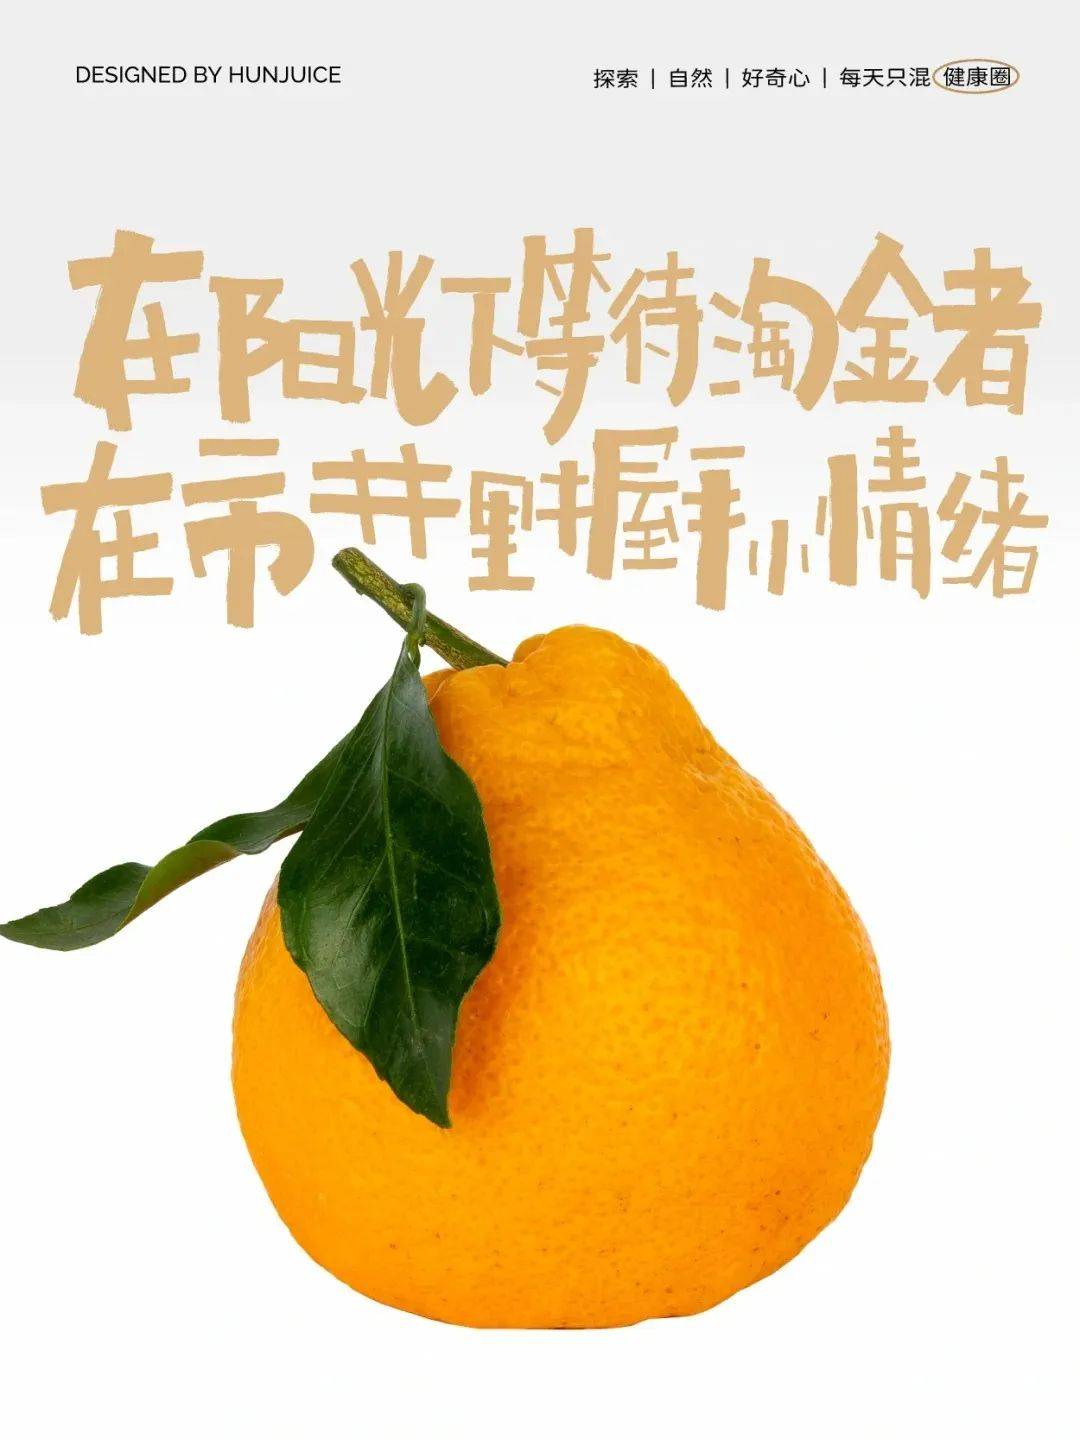 小橘子神秘力量，乡村传说引发求知热情